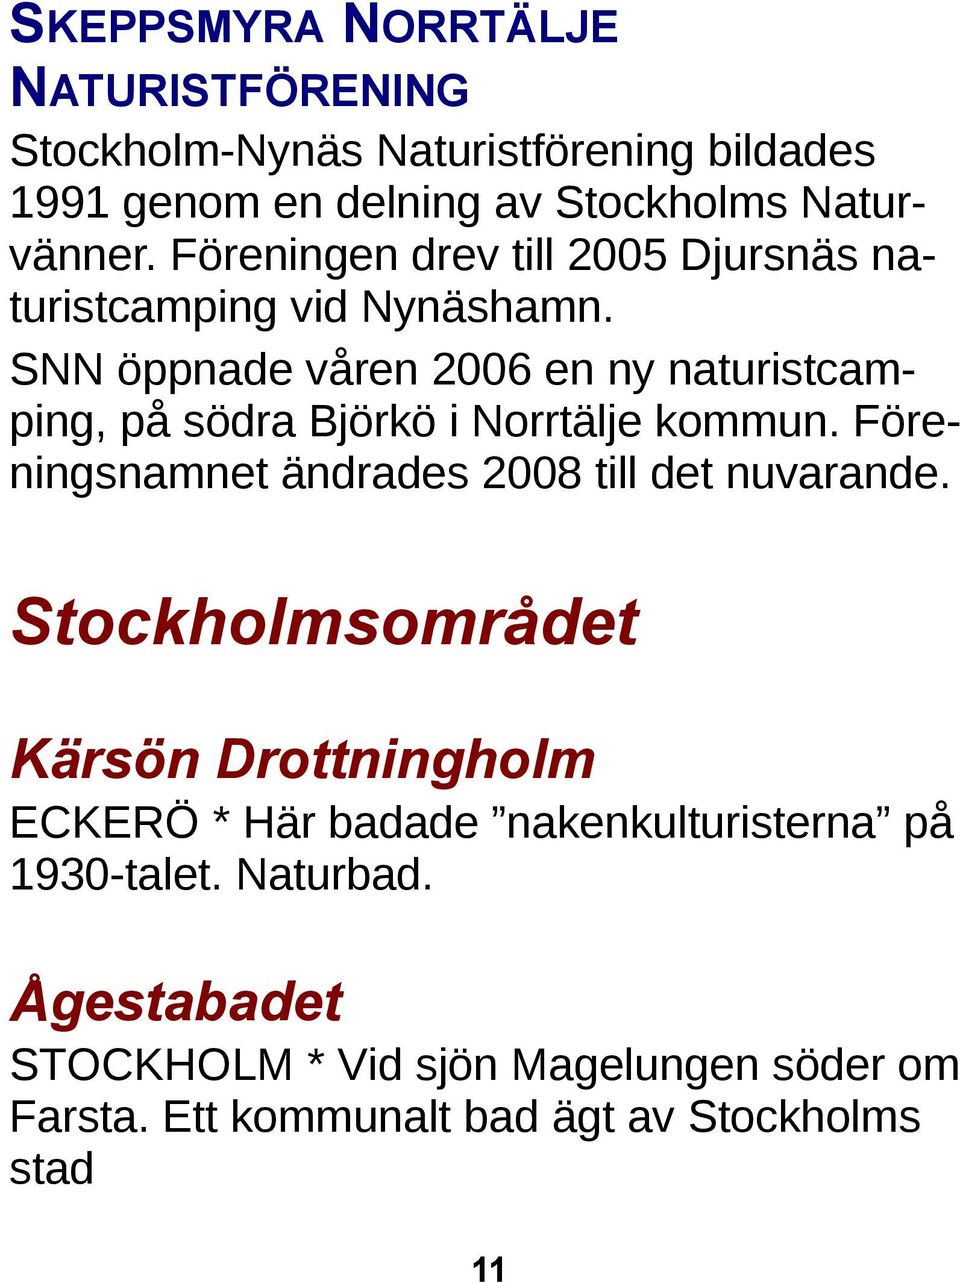 SNN öppnade våren 2006 en ny naturistcamping, på södra Björkö i Norrtälje kommun. Föreningsnamnet ändrades 2008 till det nuvarande.